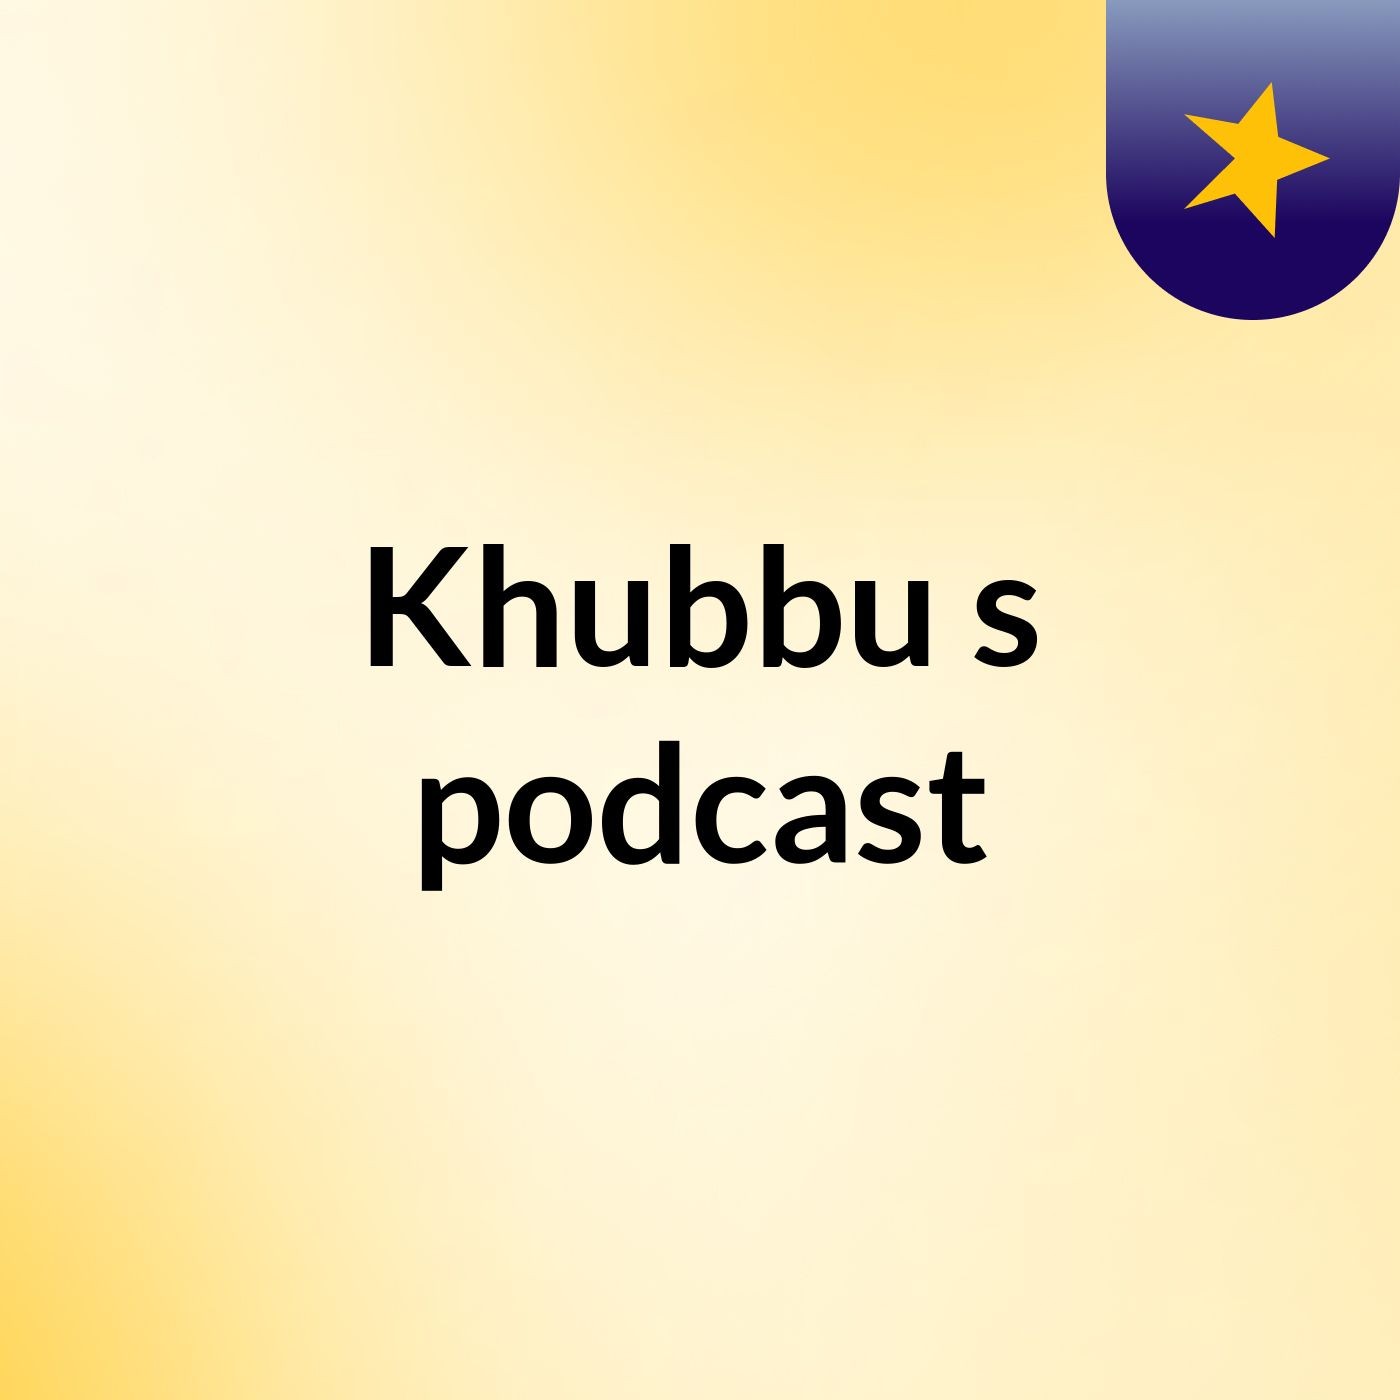 Khubbu's podcast